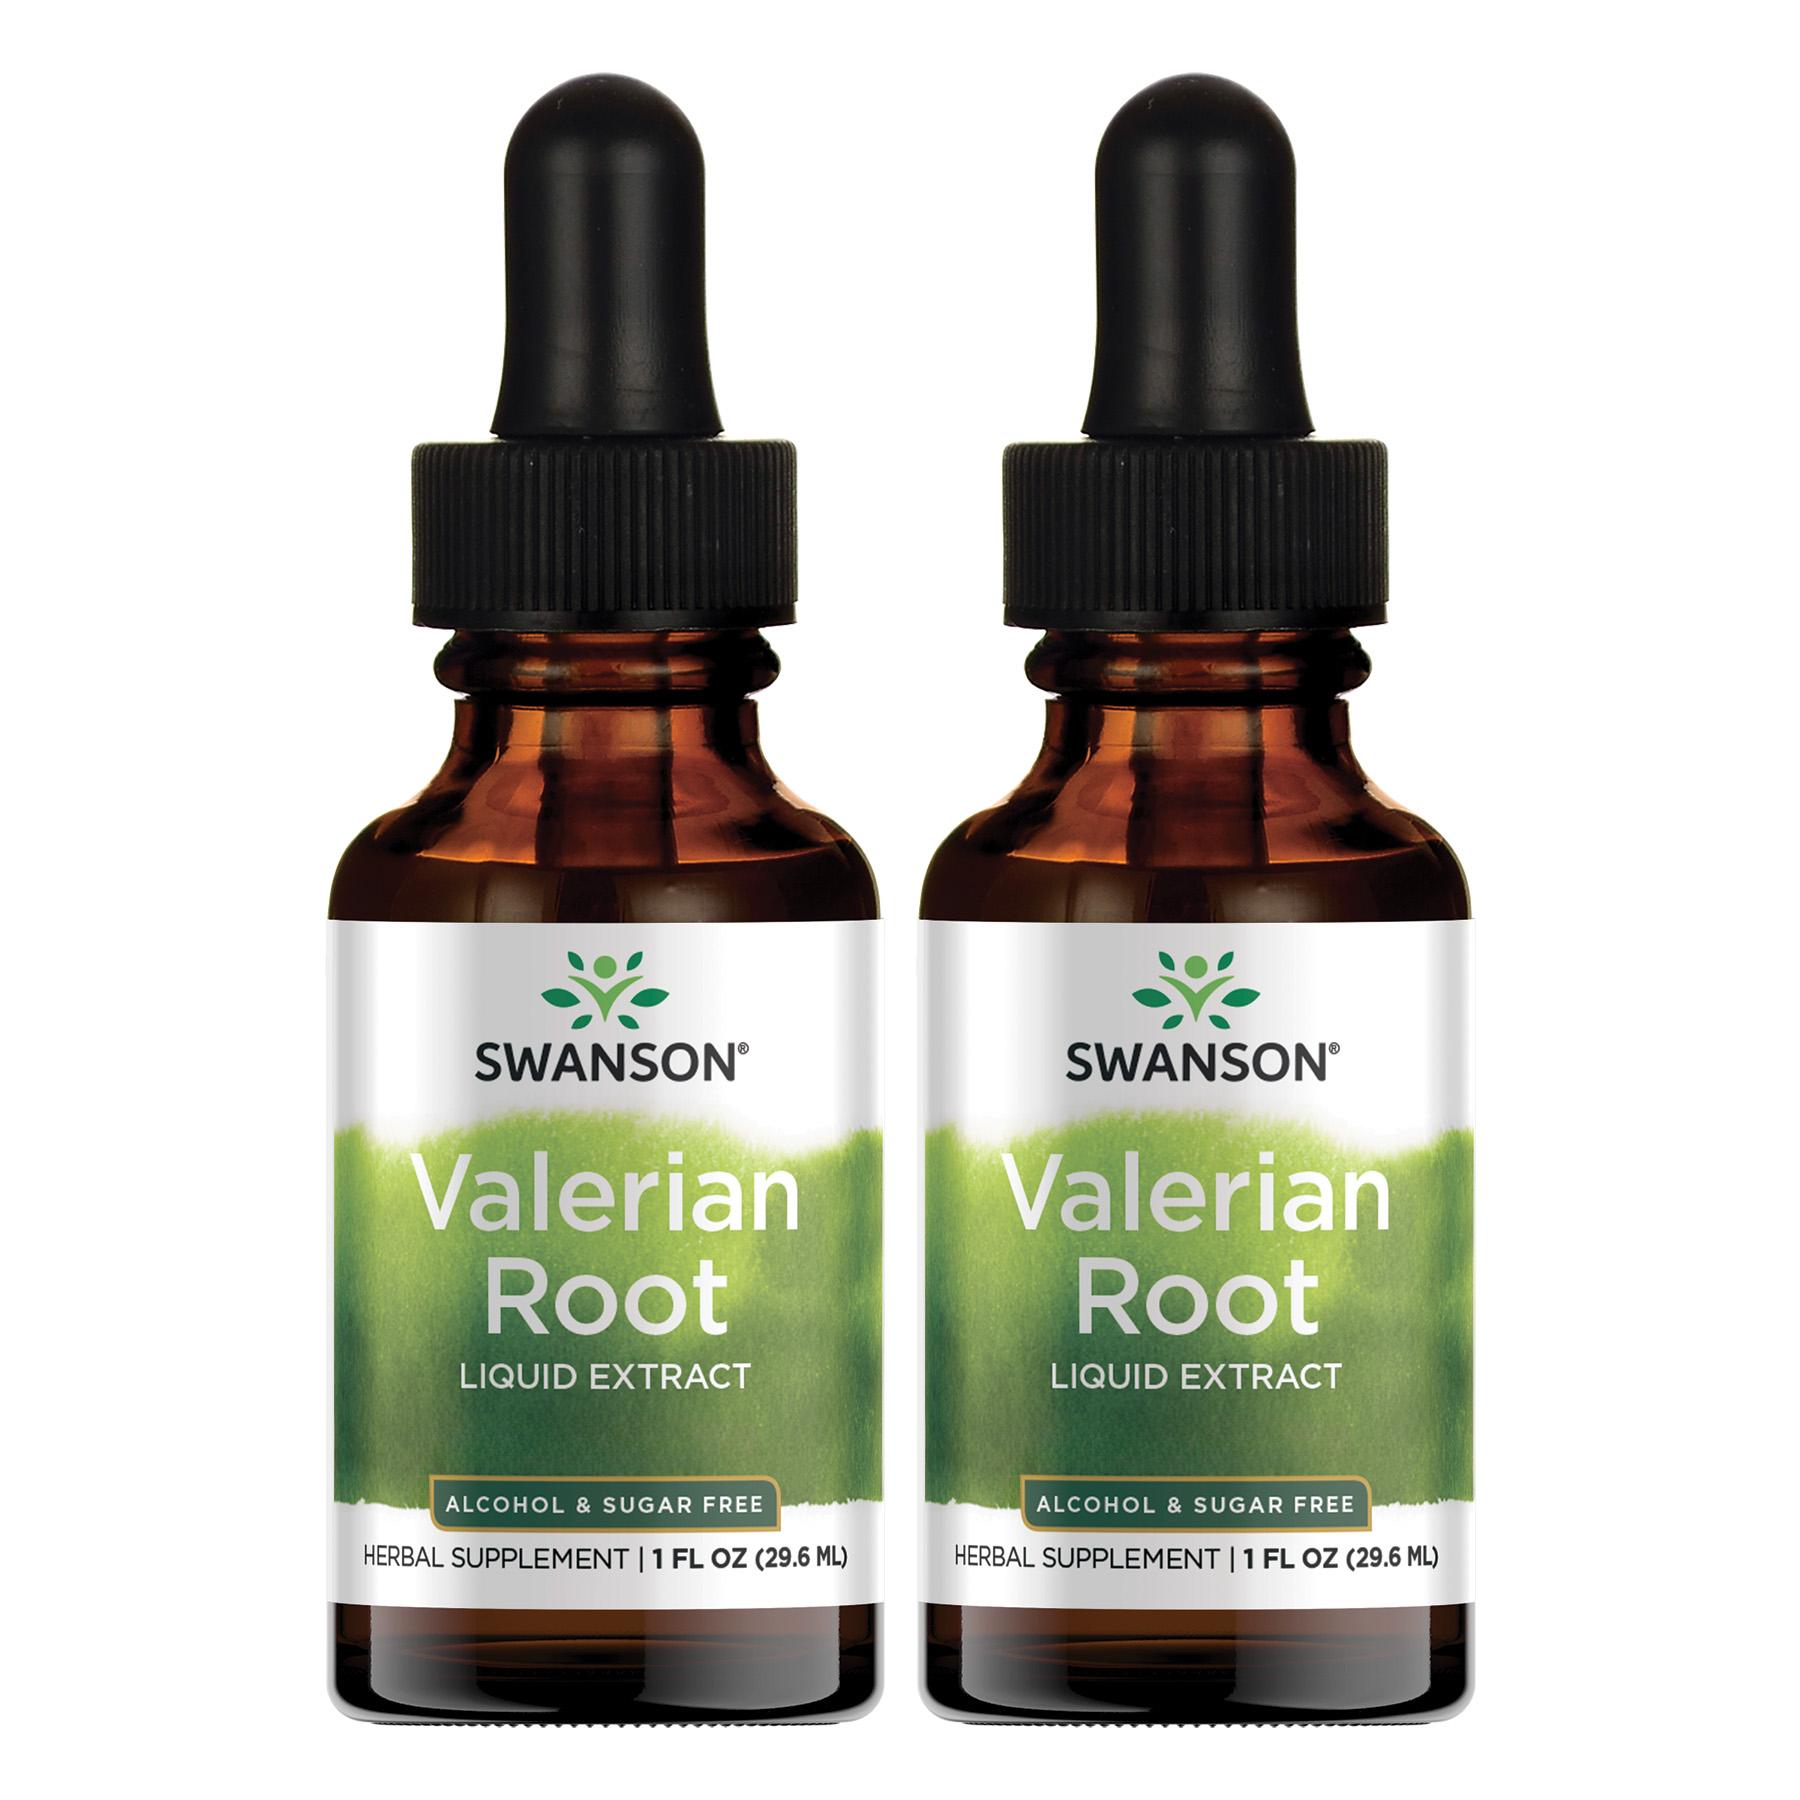 Swanson Premium Valerian Root Liquid Extract - Alcohol & Sugar Free 2 Pack Vitamin 1 G 1 fl oz Liquid